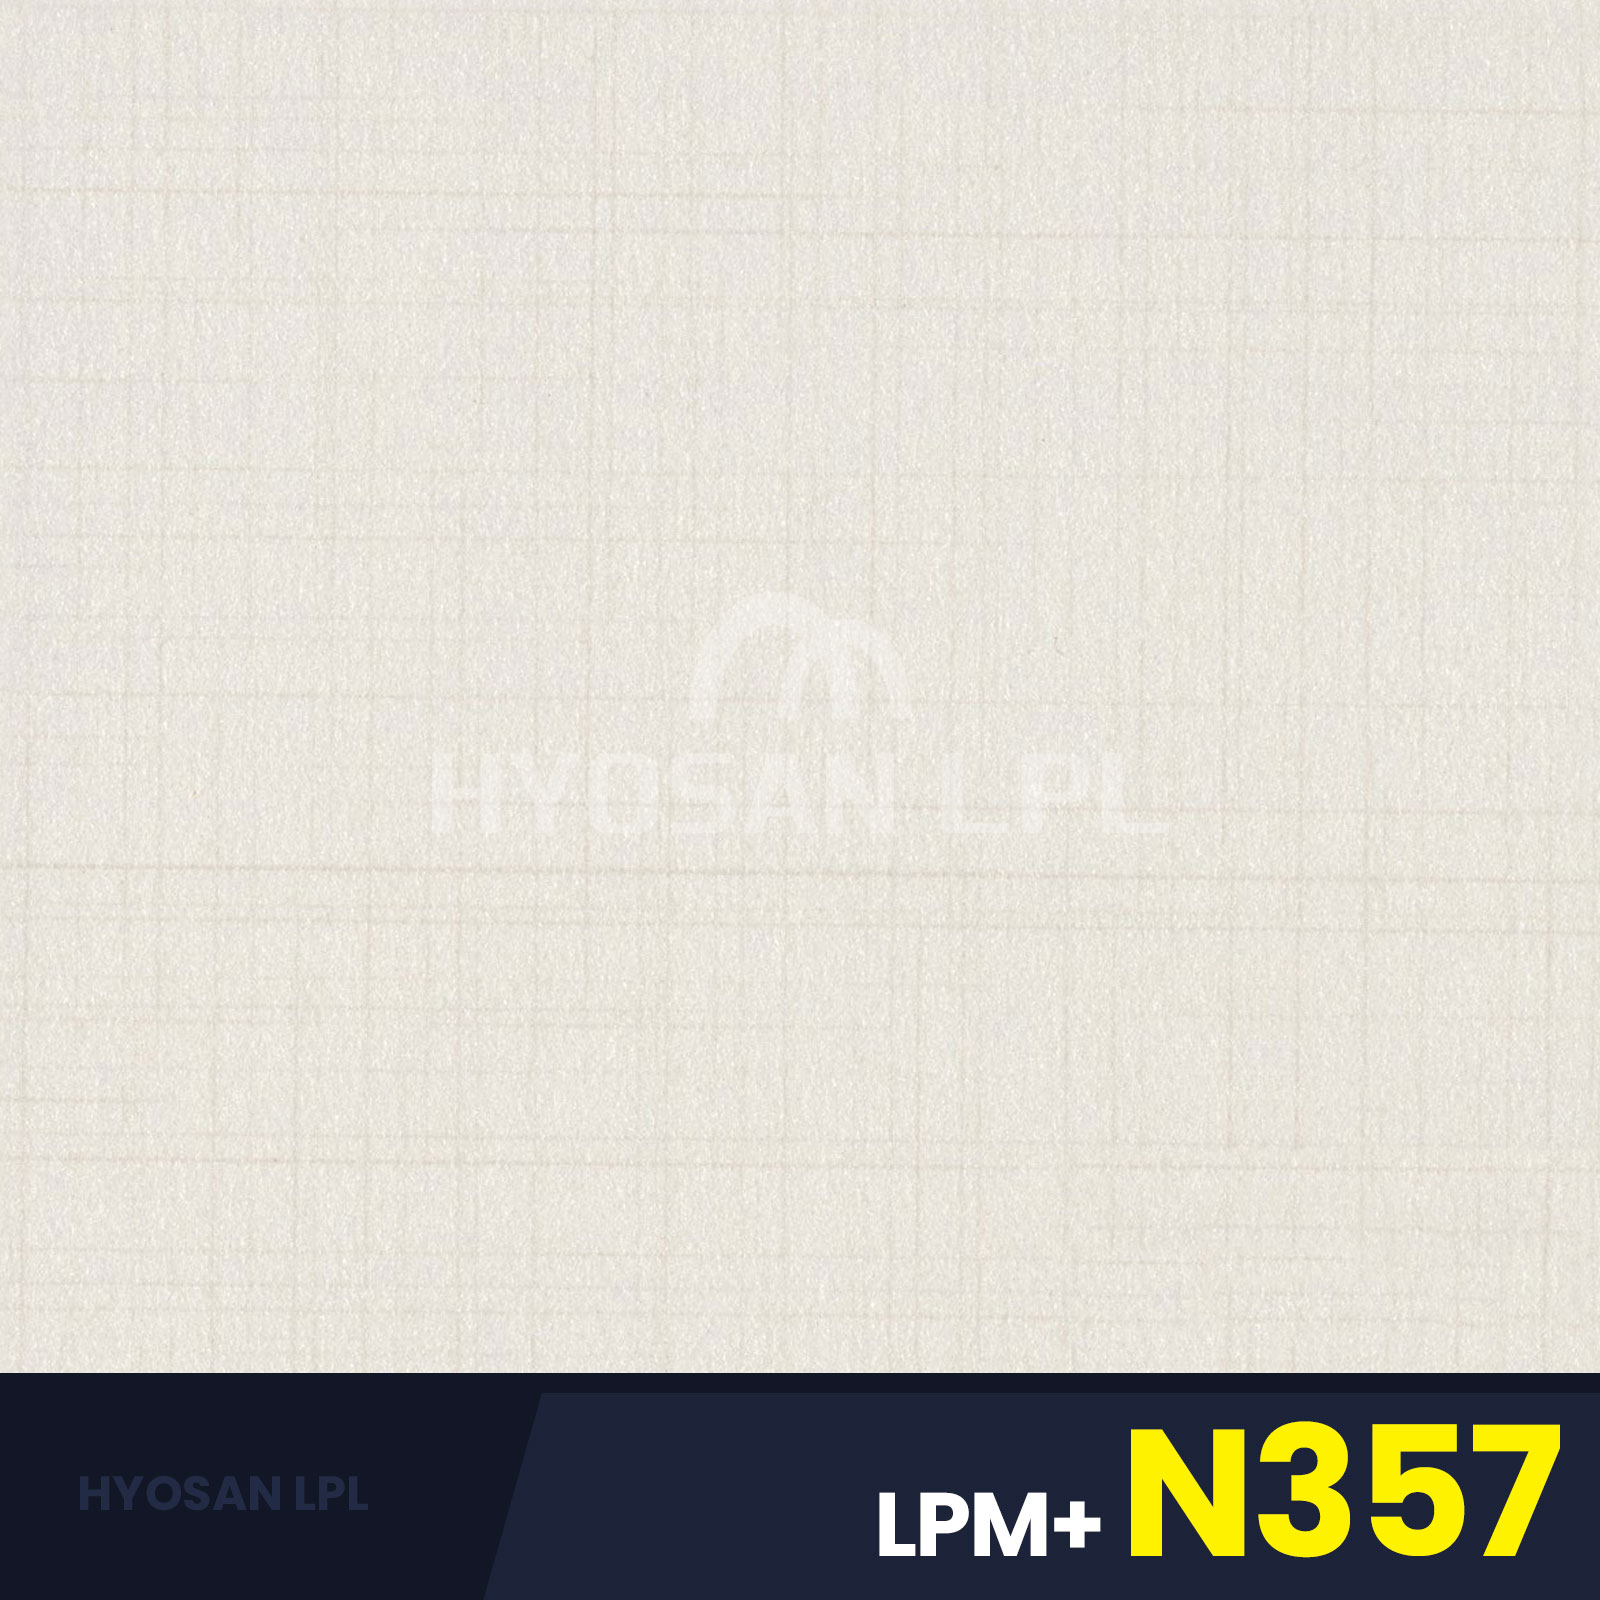 LPM+N357